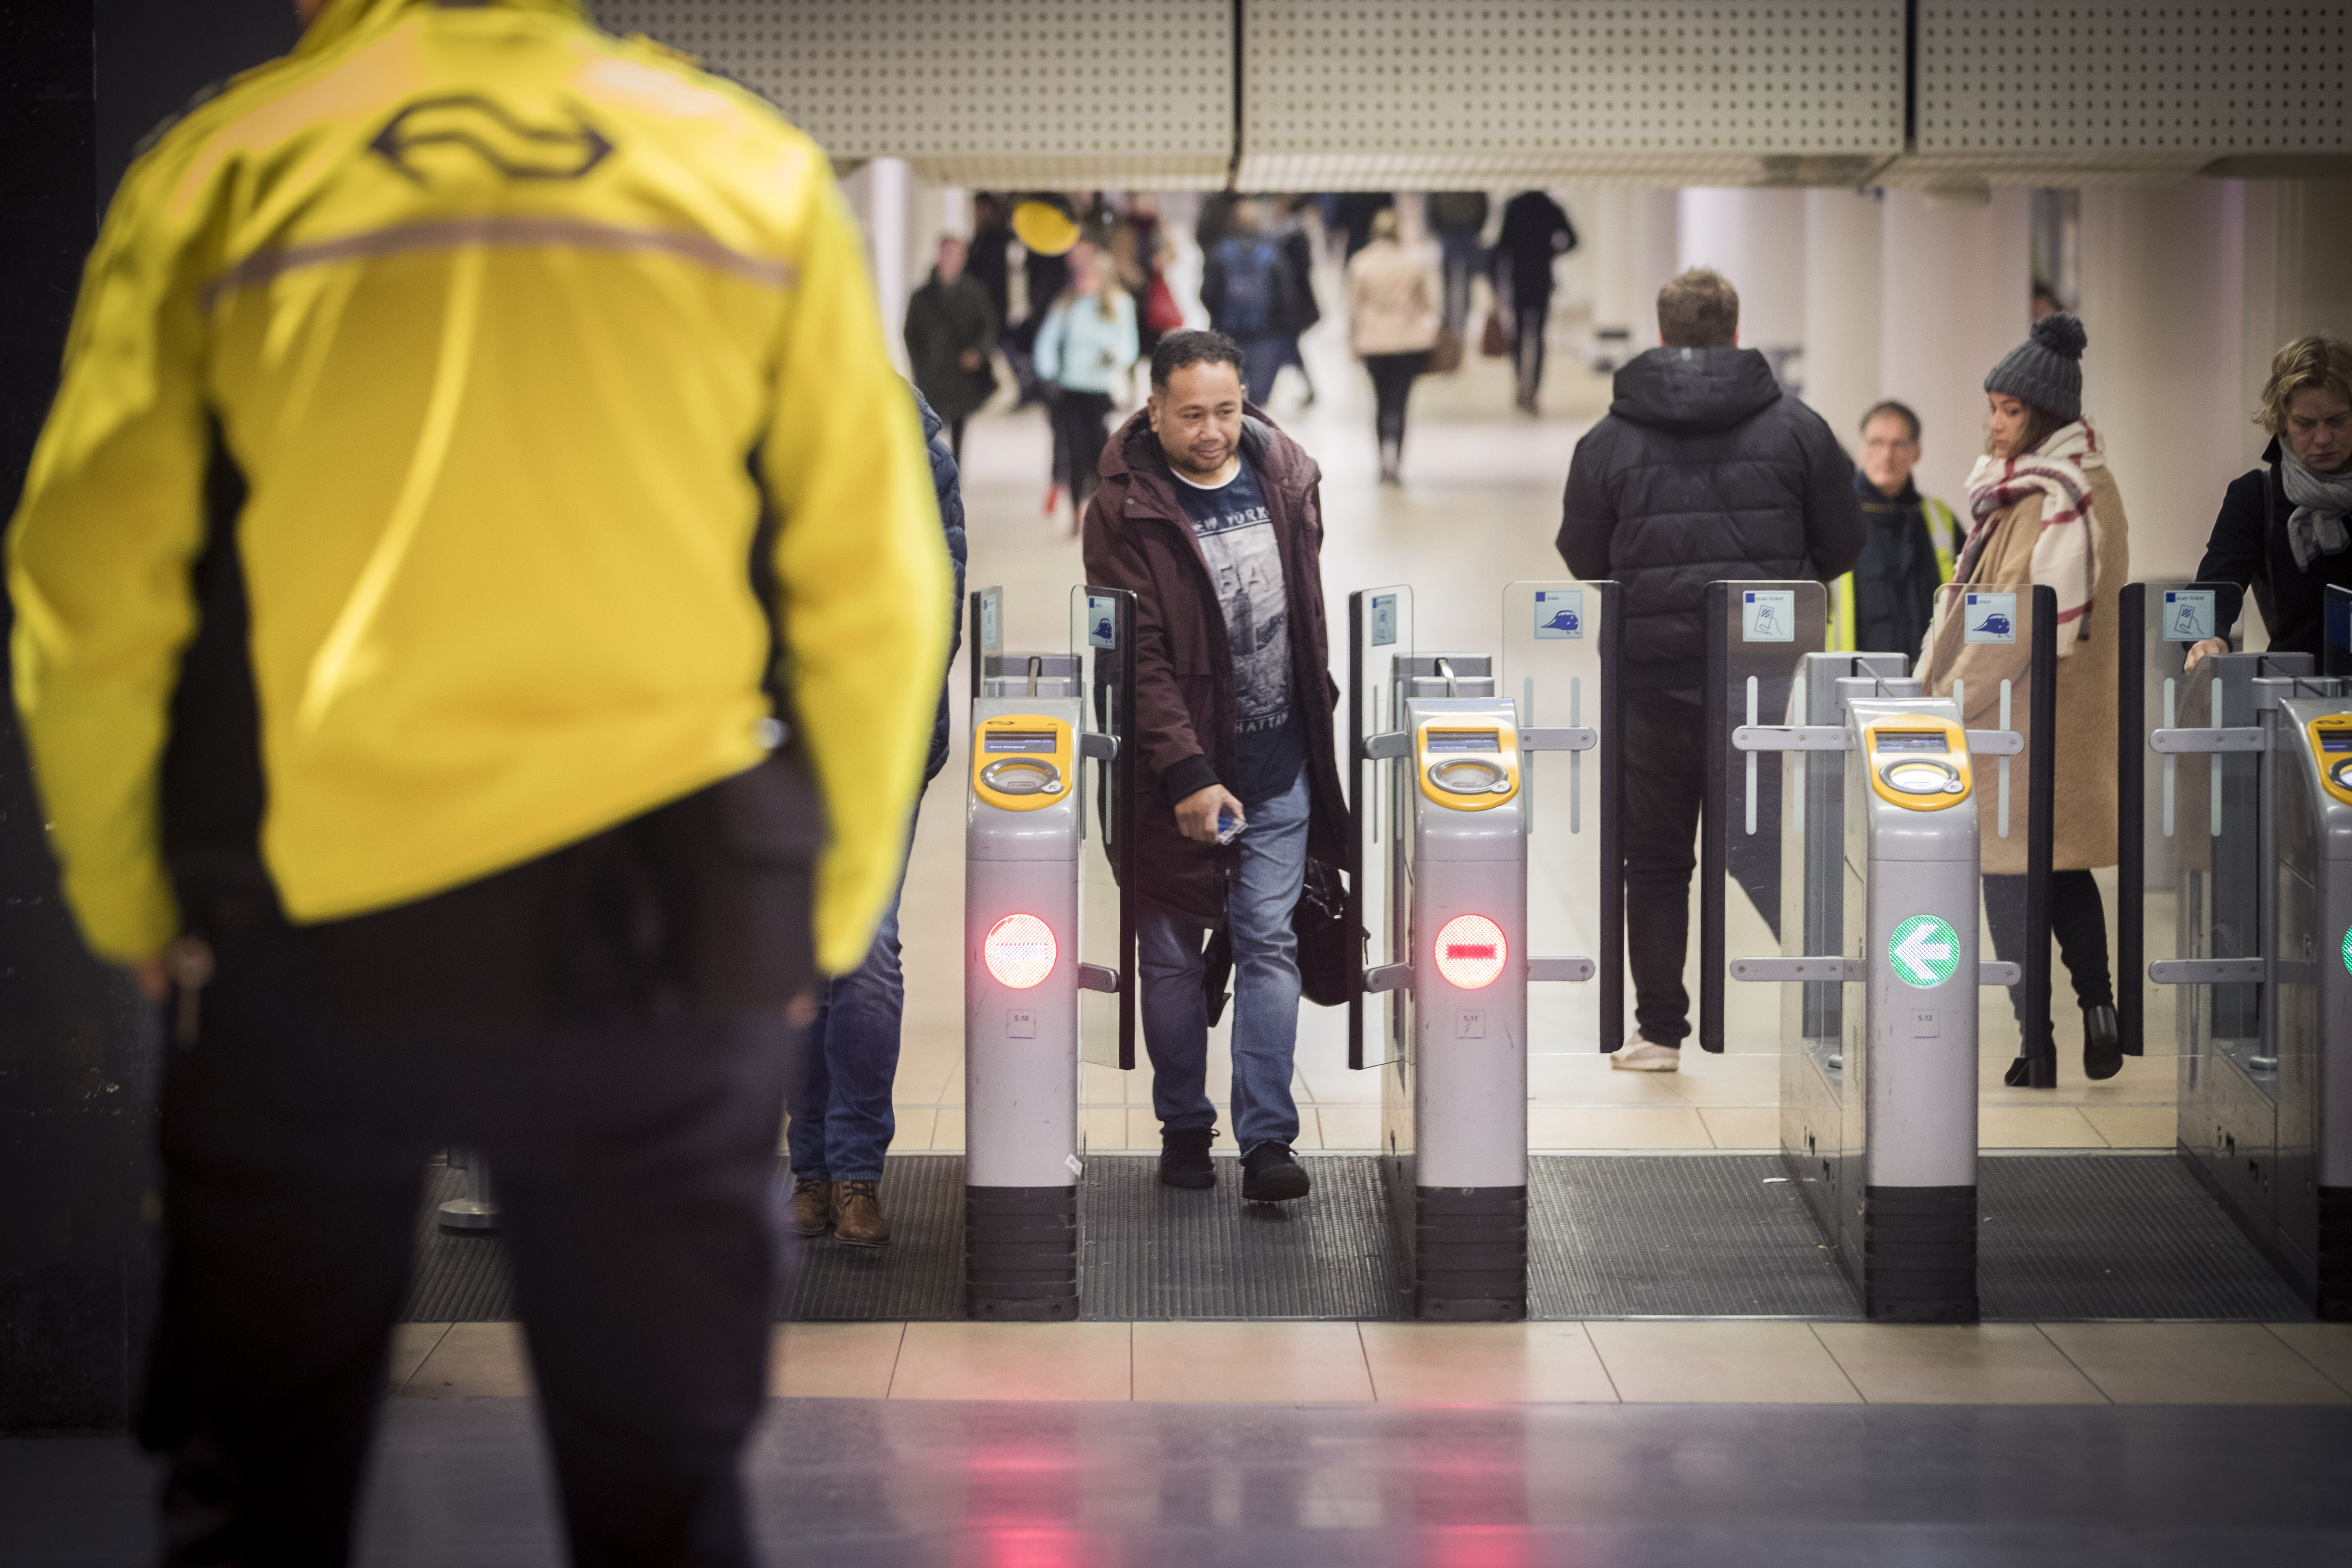 2017-12-04 07:24:51 AMSTERDAM - Alle poortjes op Amsterdam Centraal zijn gesloten. Het station is nu alleen toegankelijk voor reizigers met een OV-chipkaart met voldoende saldo of een ander geldig vervoerbewijs. ANP JEROEN JUMELET